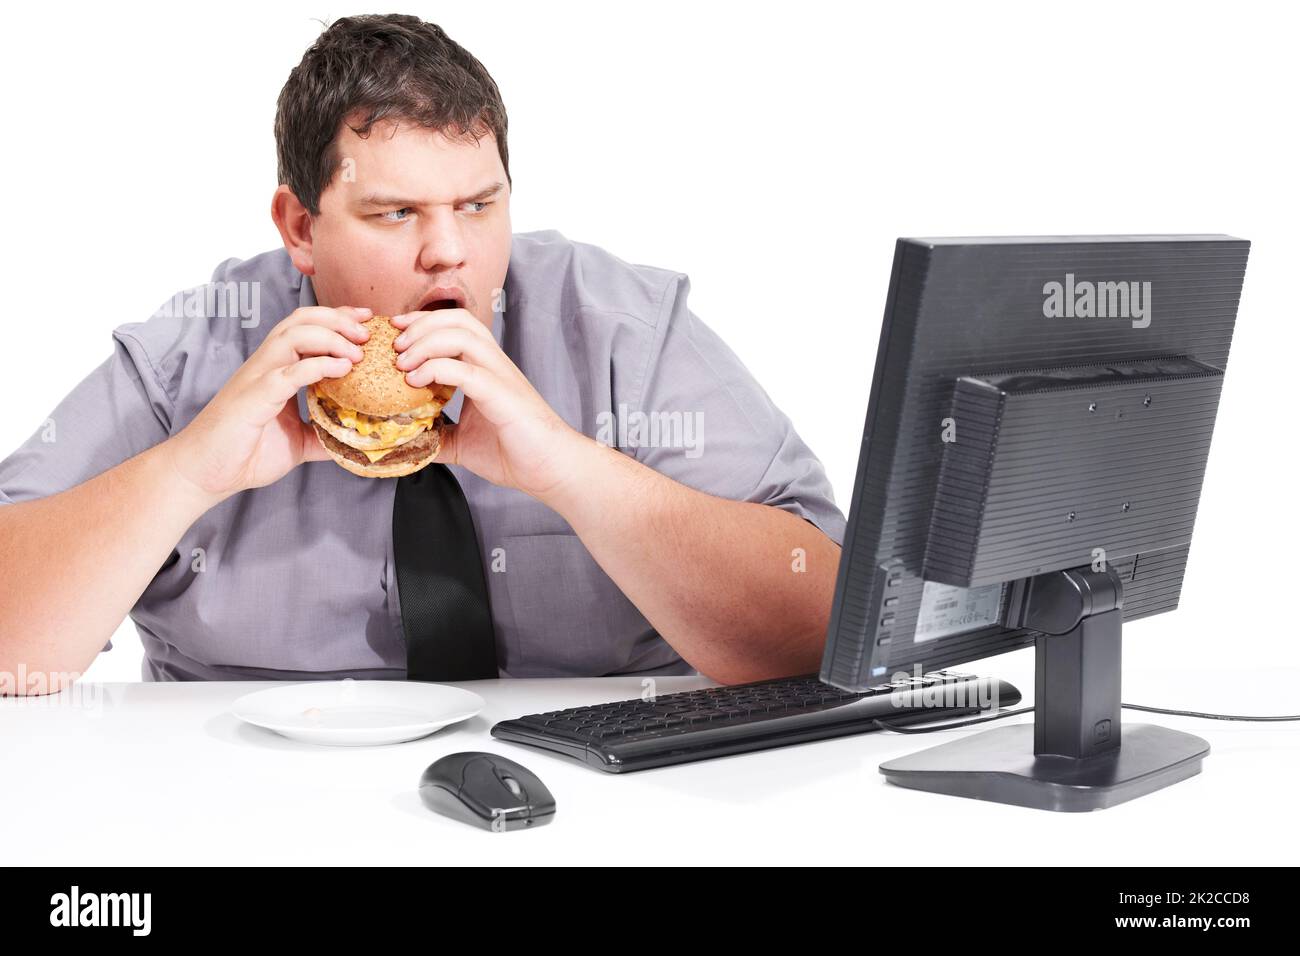 Hör auf, mir gesunde Dinge zu zeigen. Ein junger Mann isst sein Mittagessen an seinem Schreibtisch bei der Arbeit, während er mit dem Mund auf seinen Monitor starrt - ungesunde Essgewohnheiten. Stockfoto